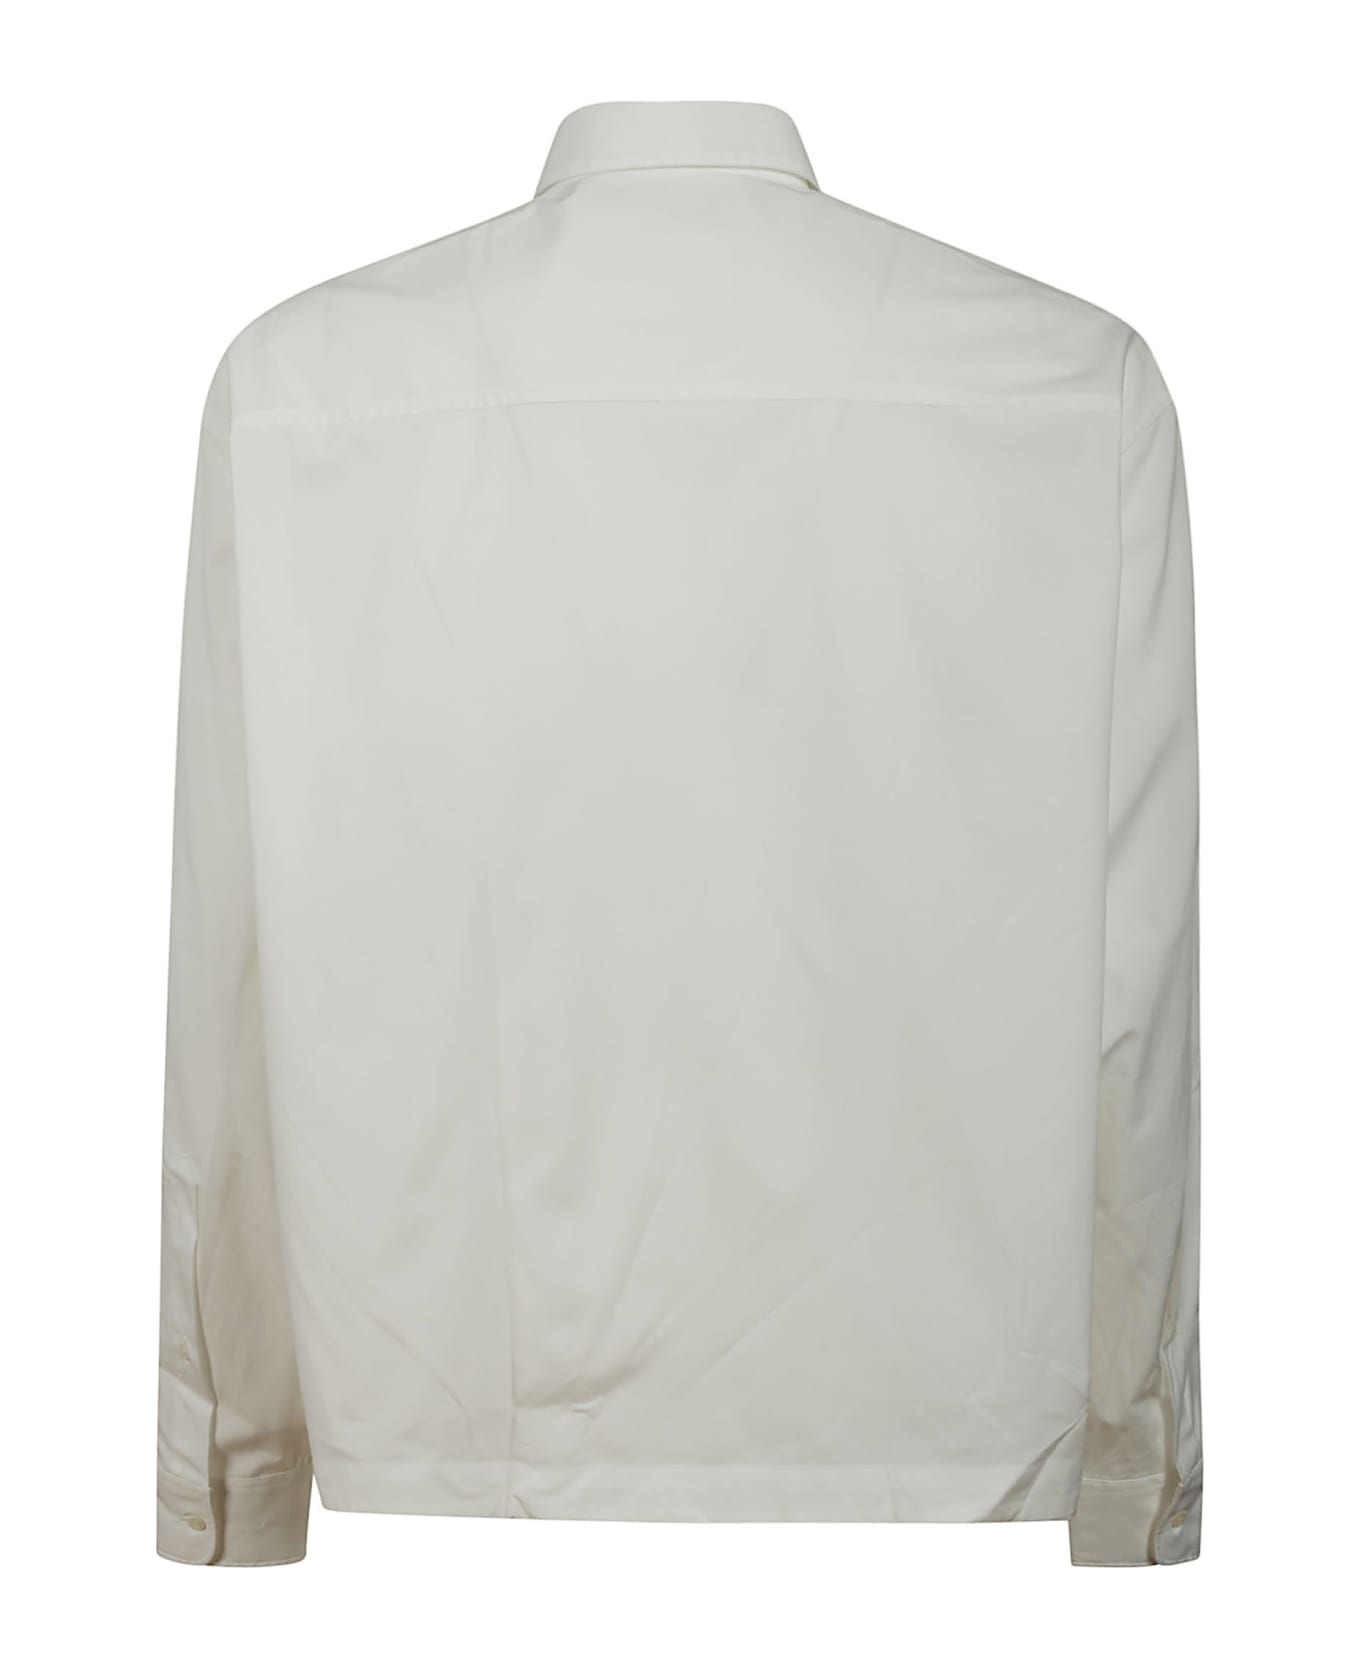 Ami Alexandre Mattiussi Shirt - White Natural